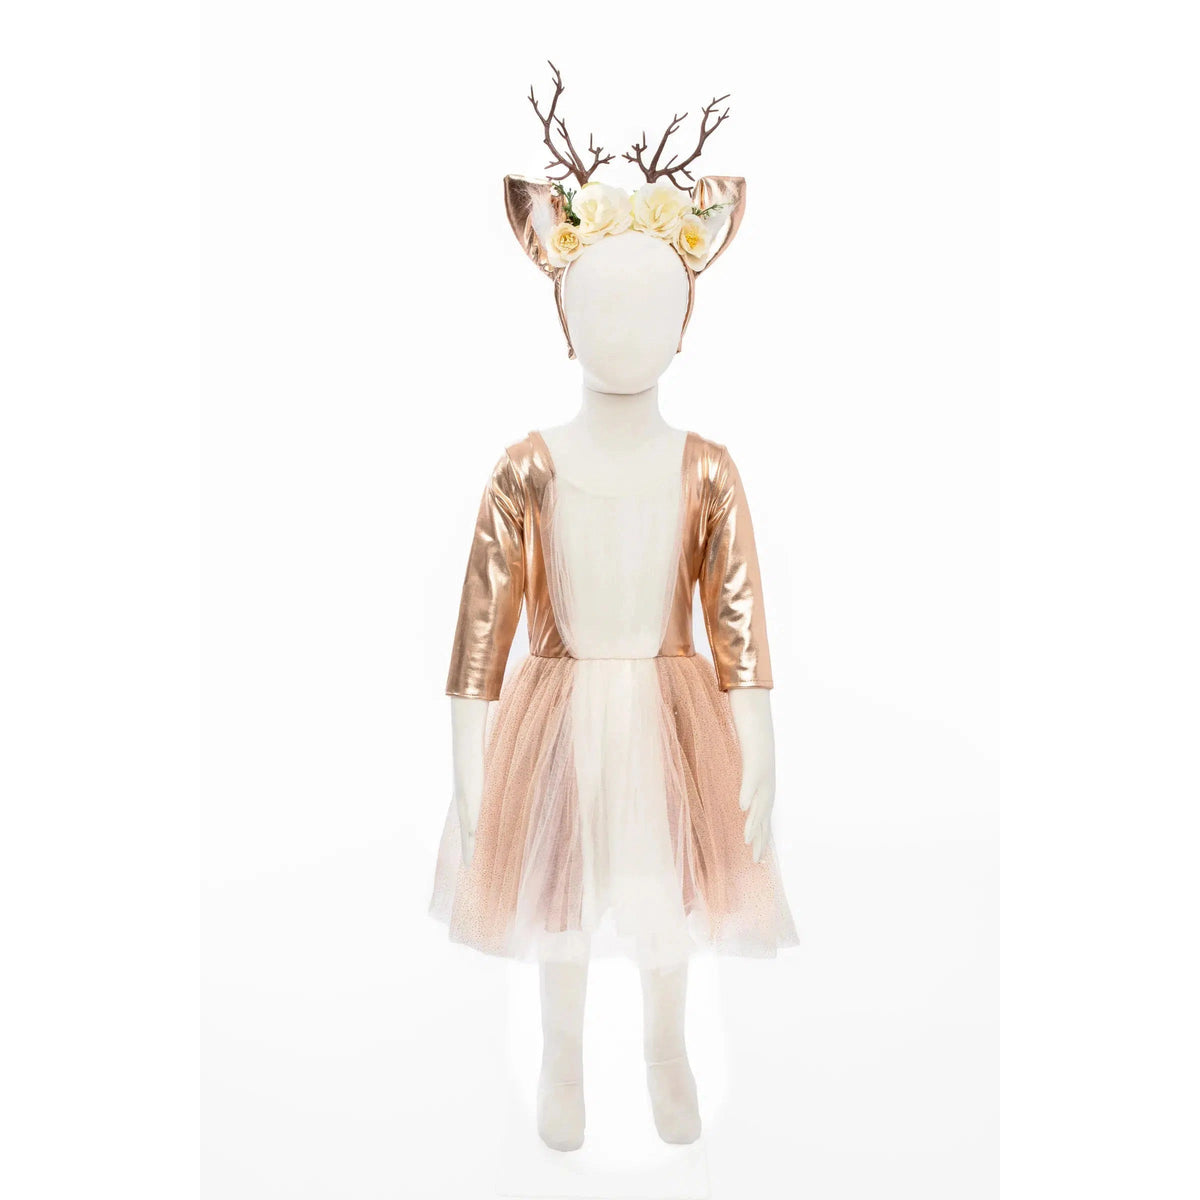 Mannequin front view, wearing deer costume.